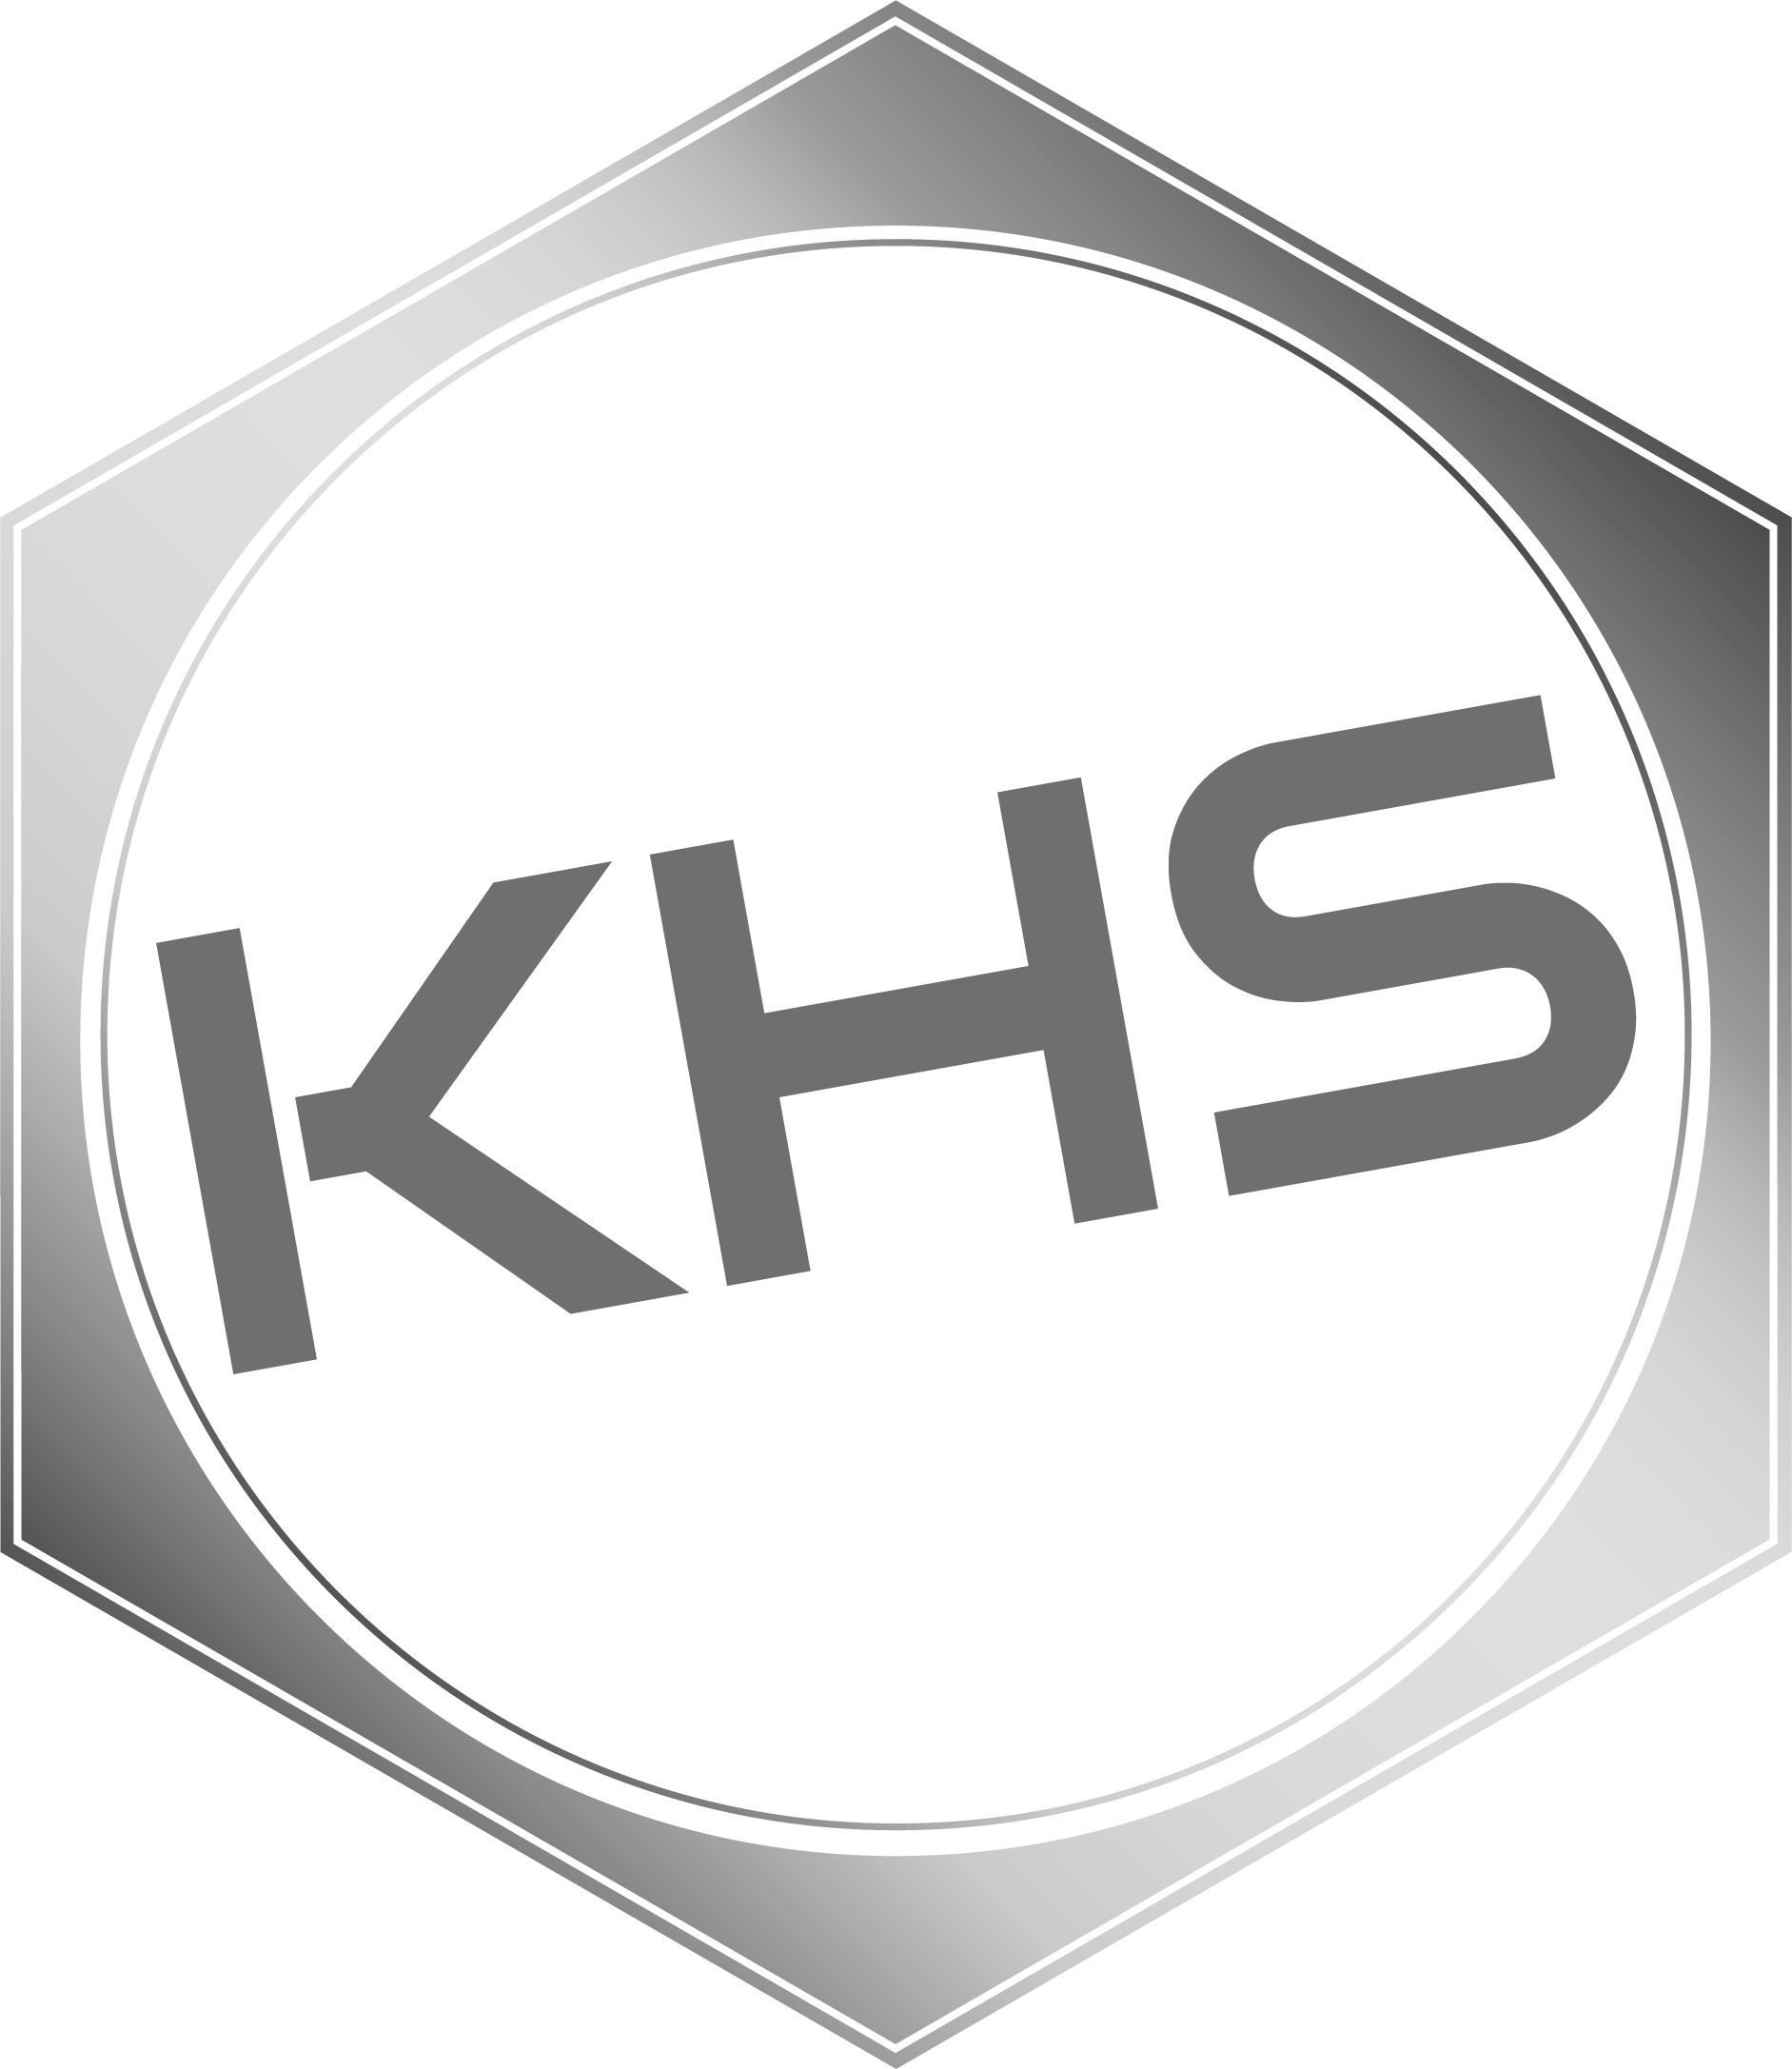 KHS Sechskant Hydraulikschlauch Service Symbol ohne Hintergrund